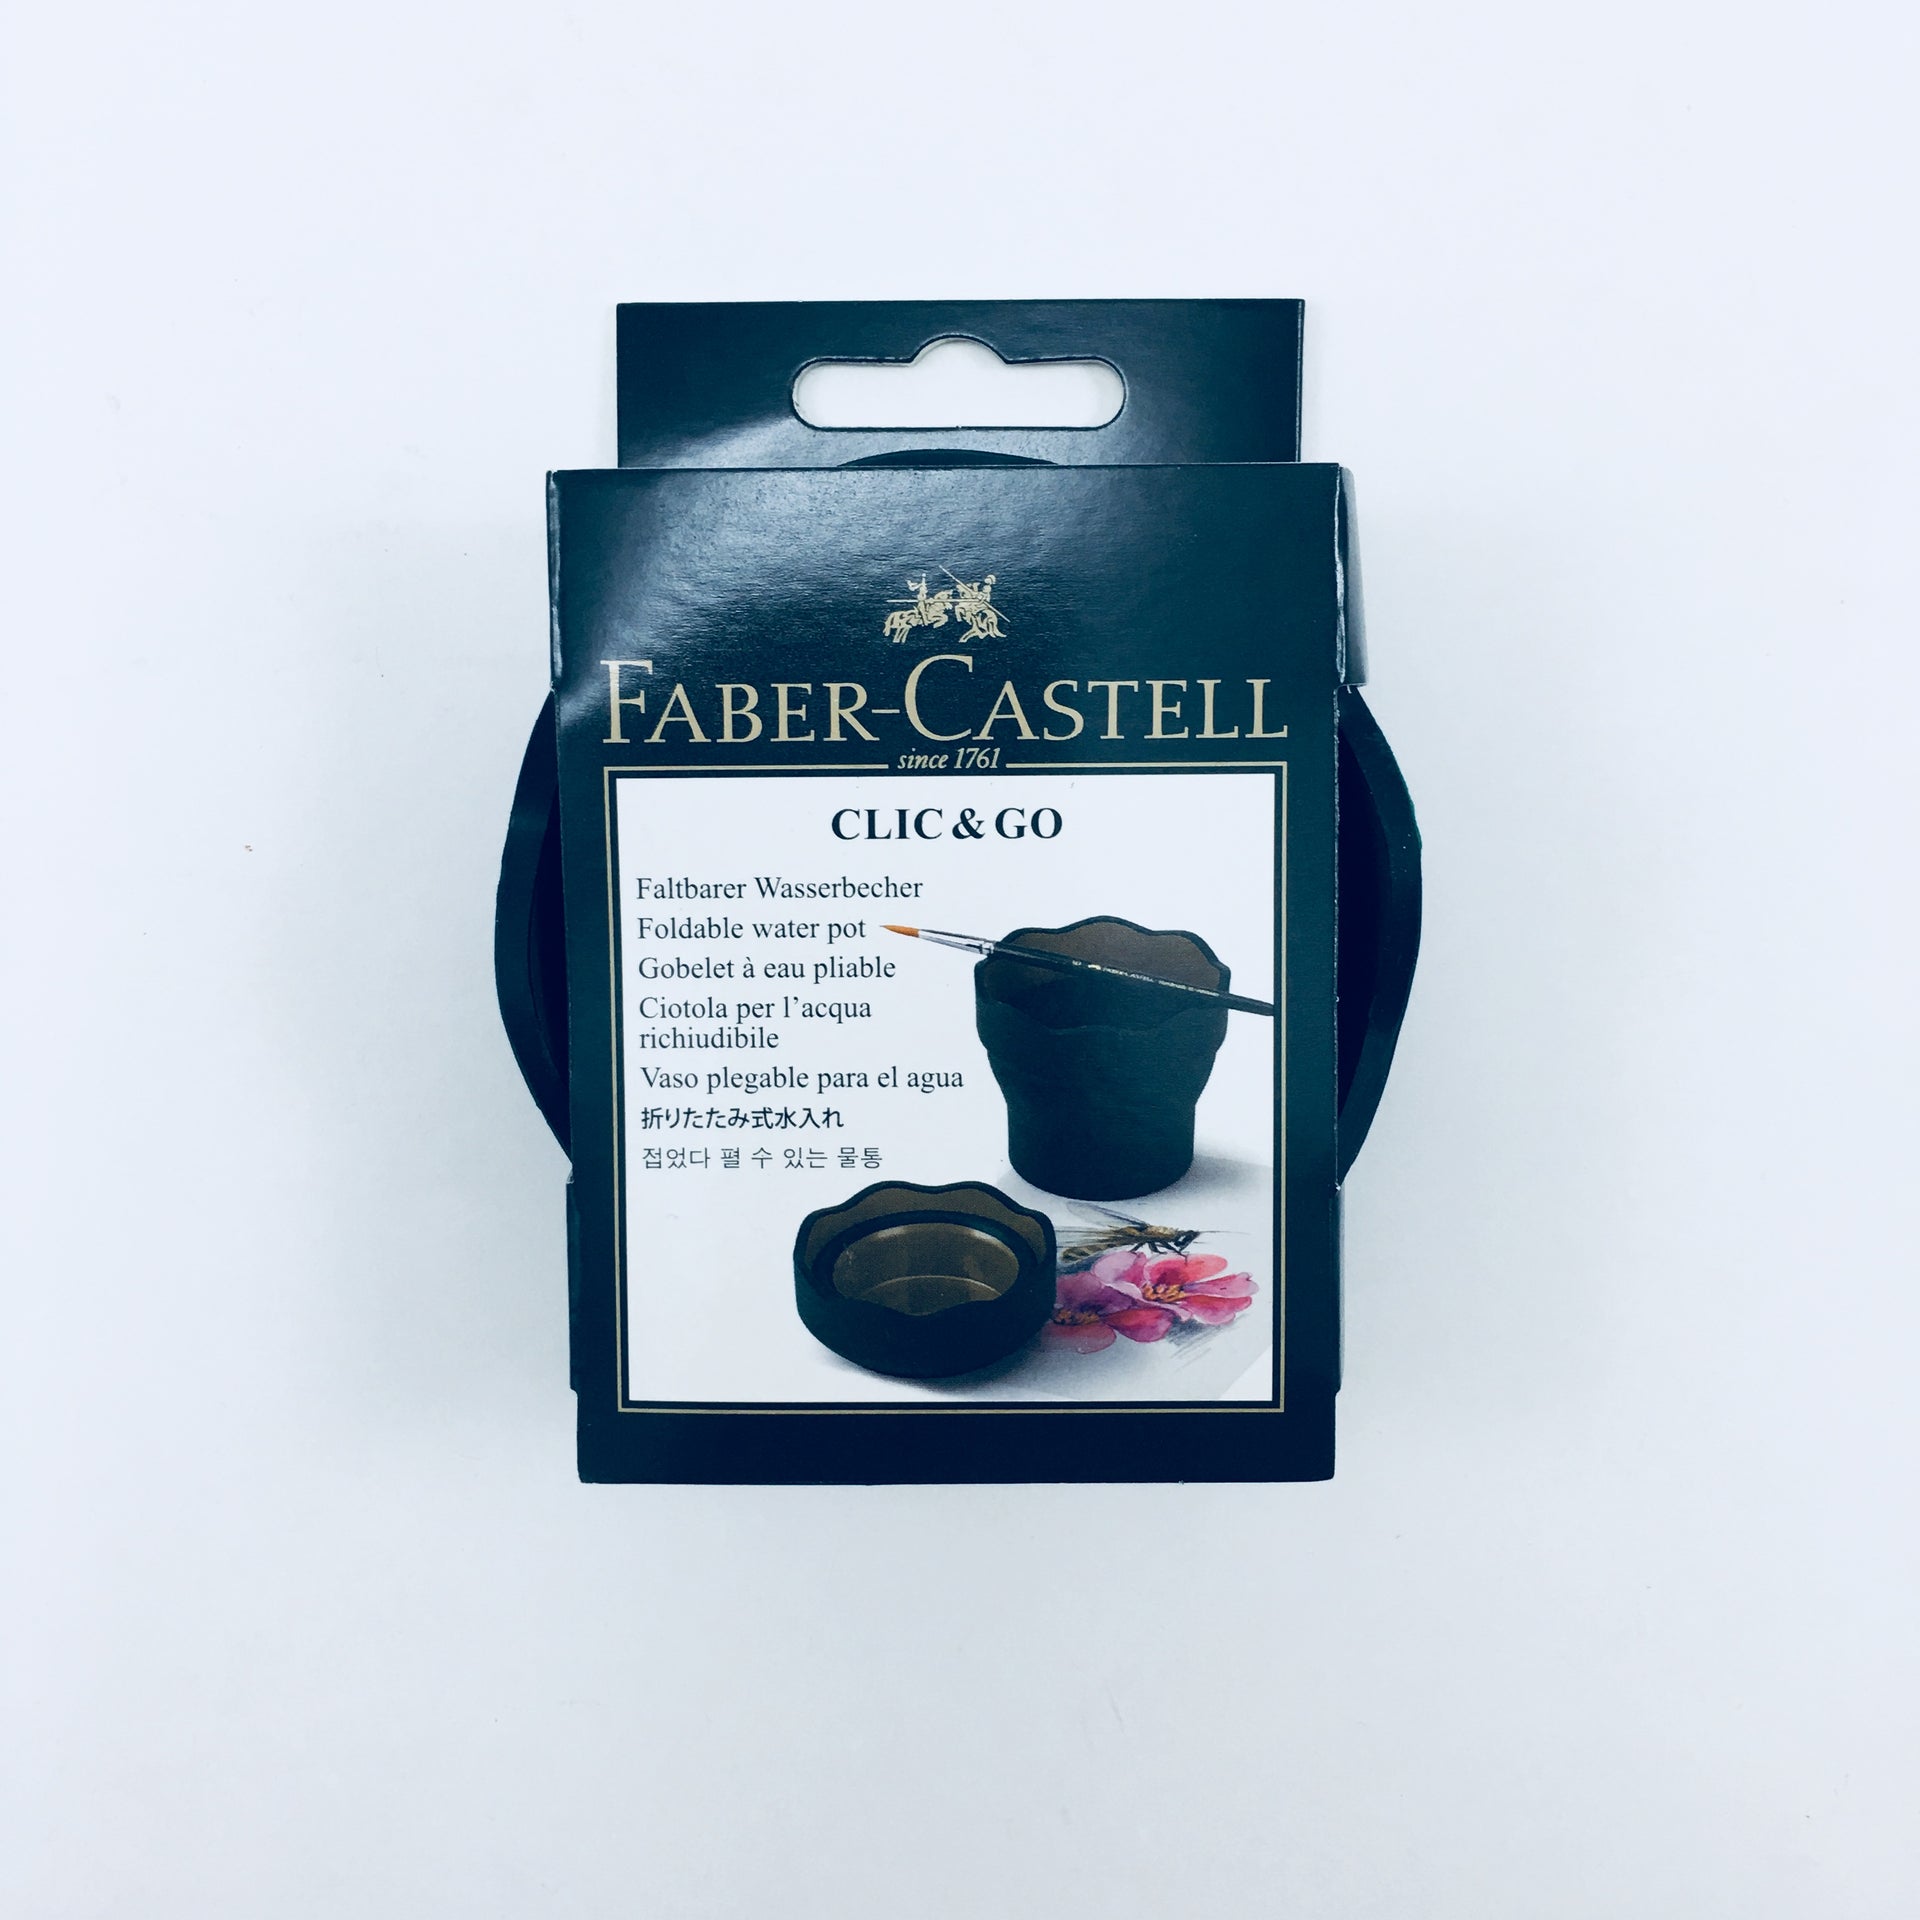 Faber-Castell Goldfaber Aqua Watercolor Pencils - Individuals